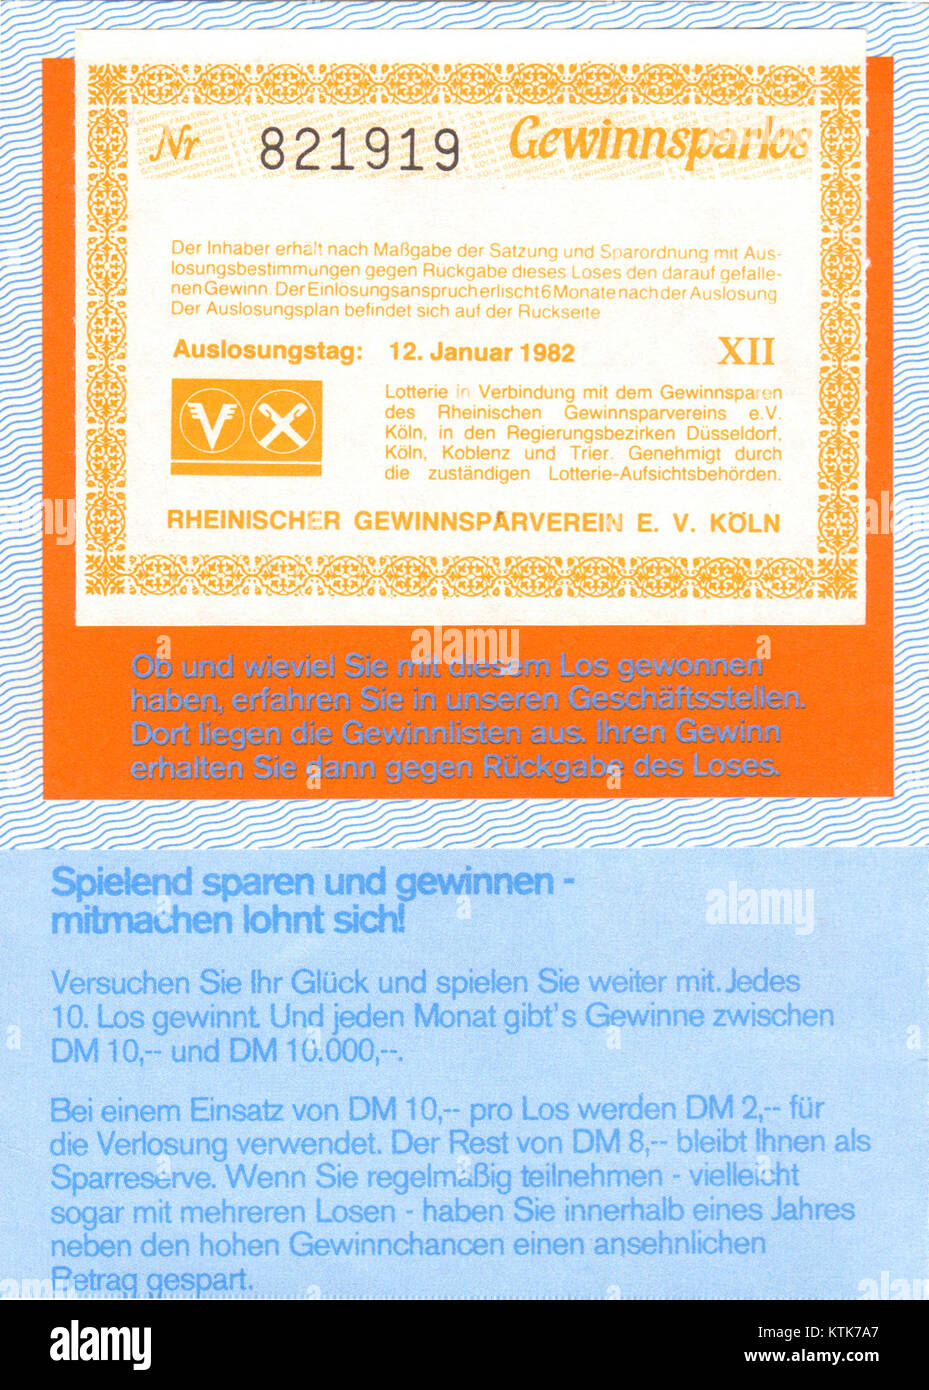 Gewinnsparlos Rheinischer Gewinnsparverein, 1982 Foto Stock